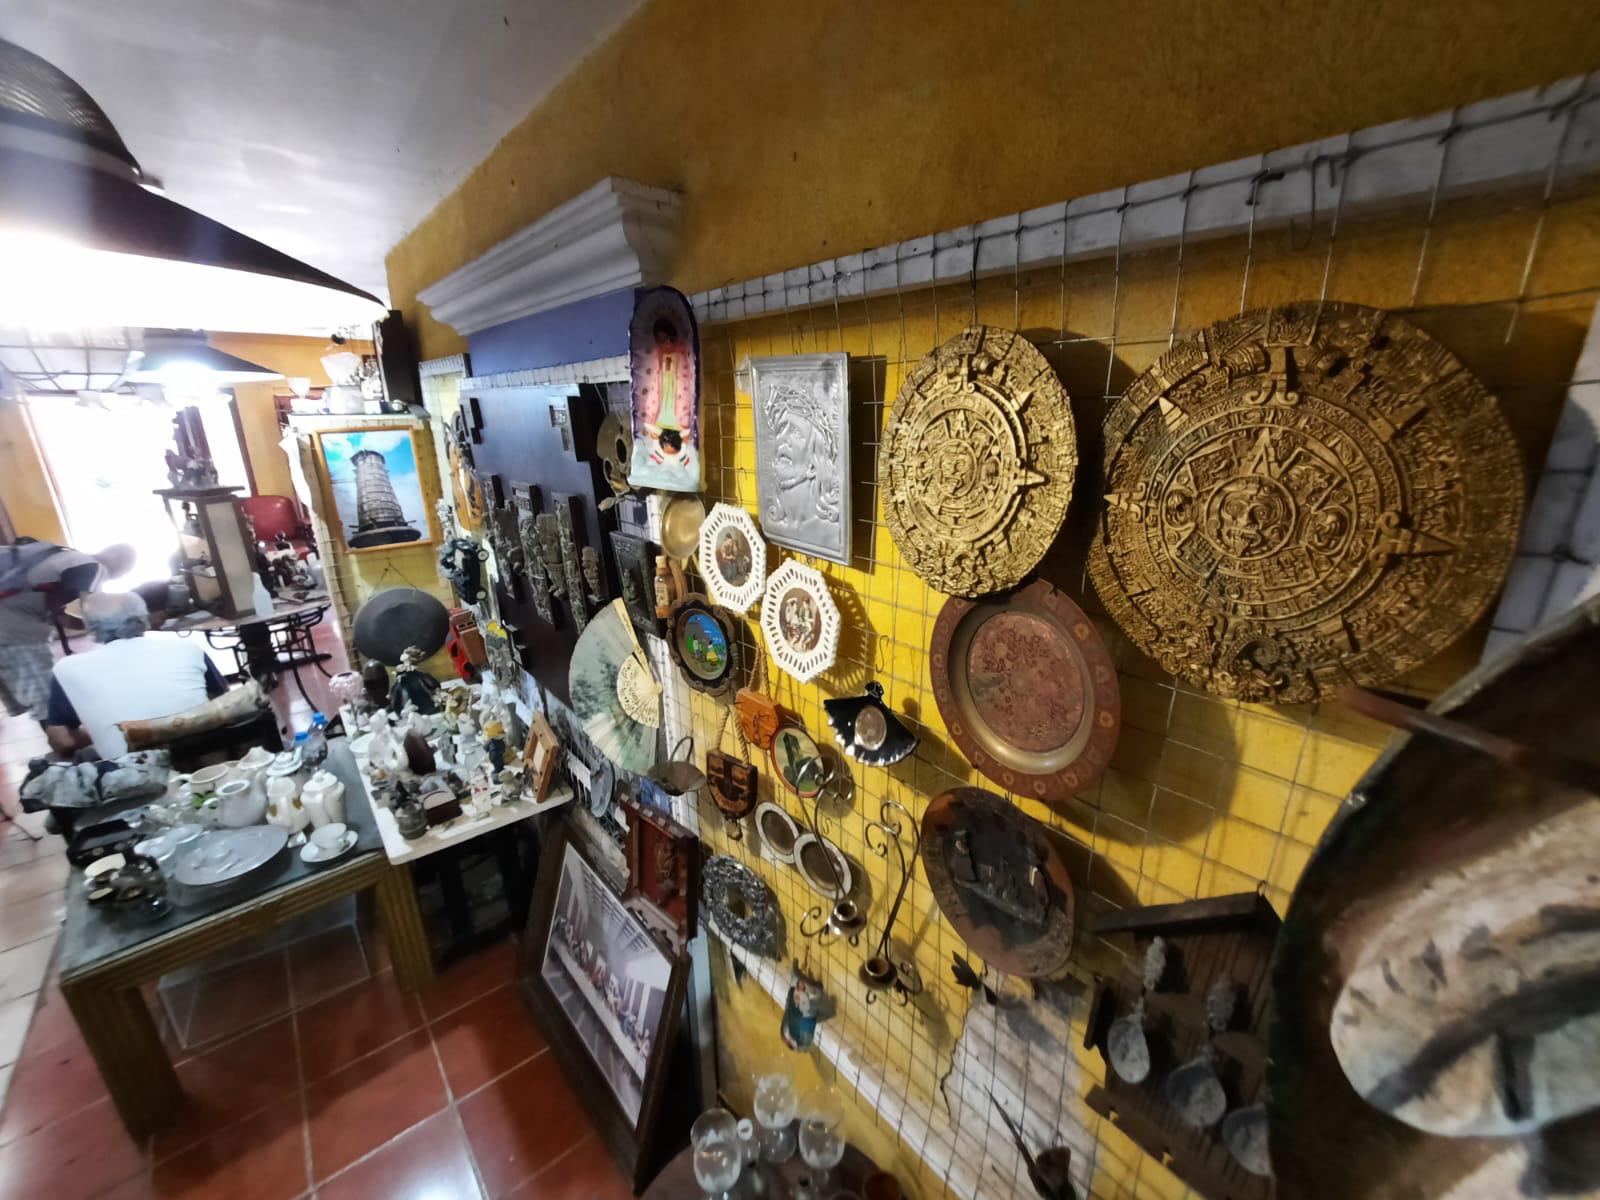 $!El Bazar de Javier, un espacio de antigüedades de México, en el Centro de Mazatlán